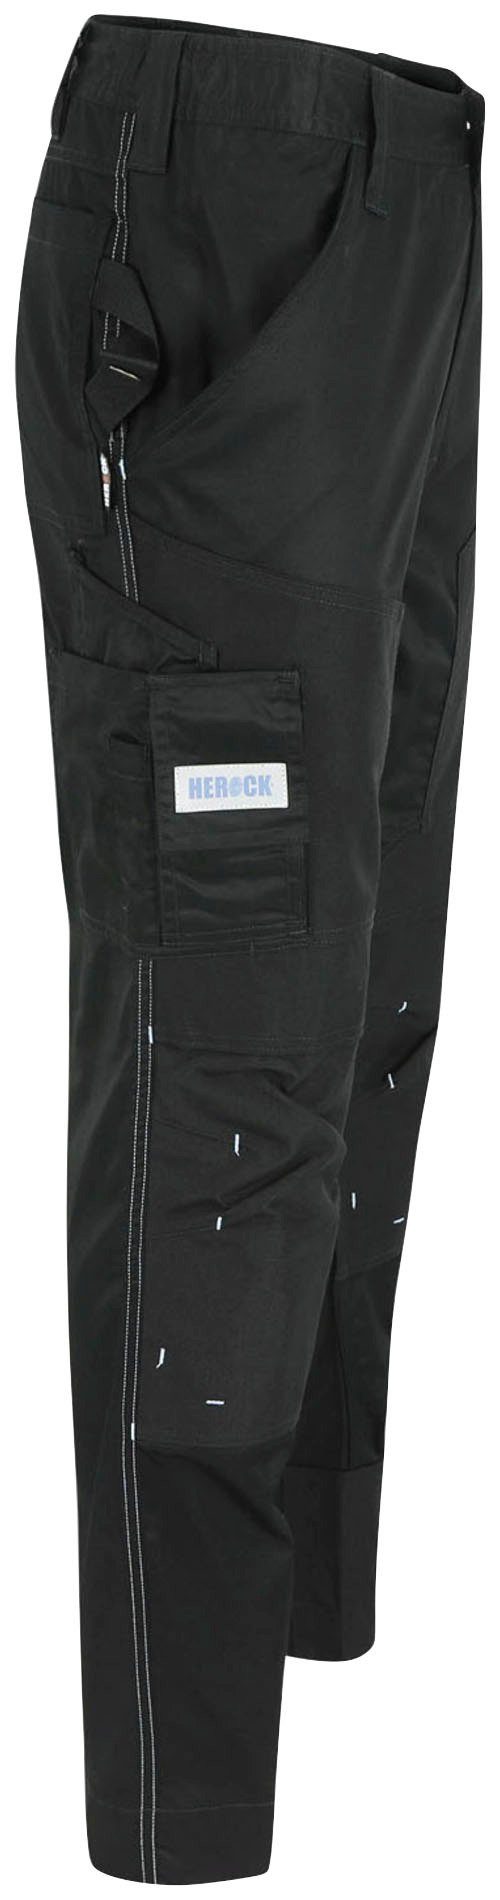 Herock mit Stretch, leicht Arbeitshose Capua Farben Taschen, mehrere Coolmax® Hose schwarz Viele -Techn.;